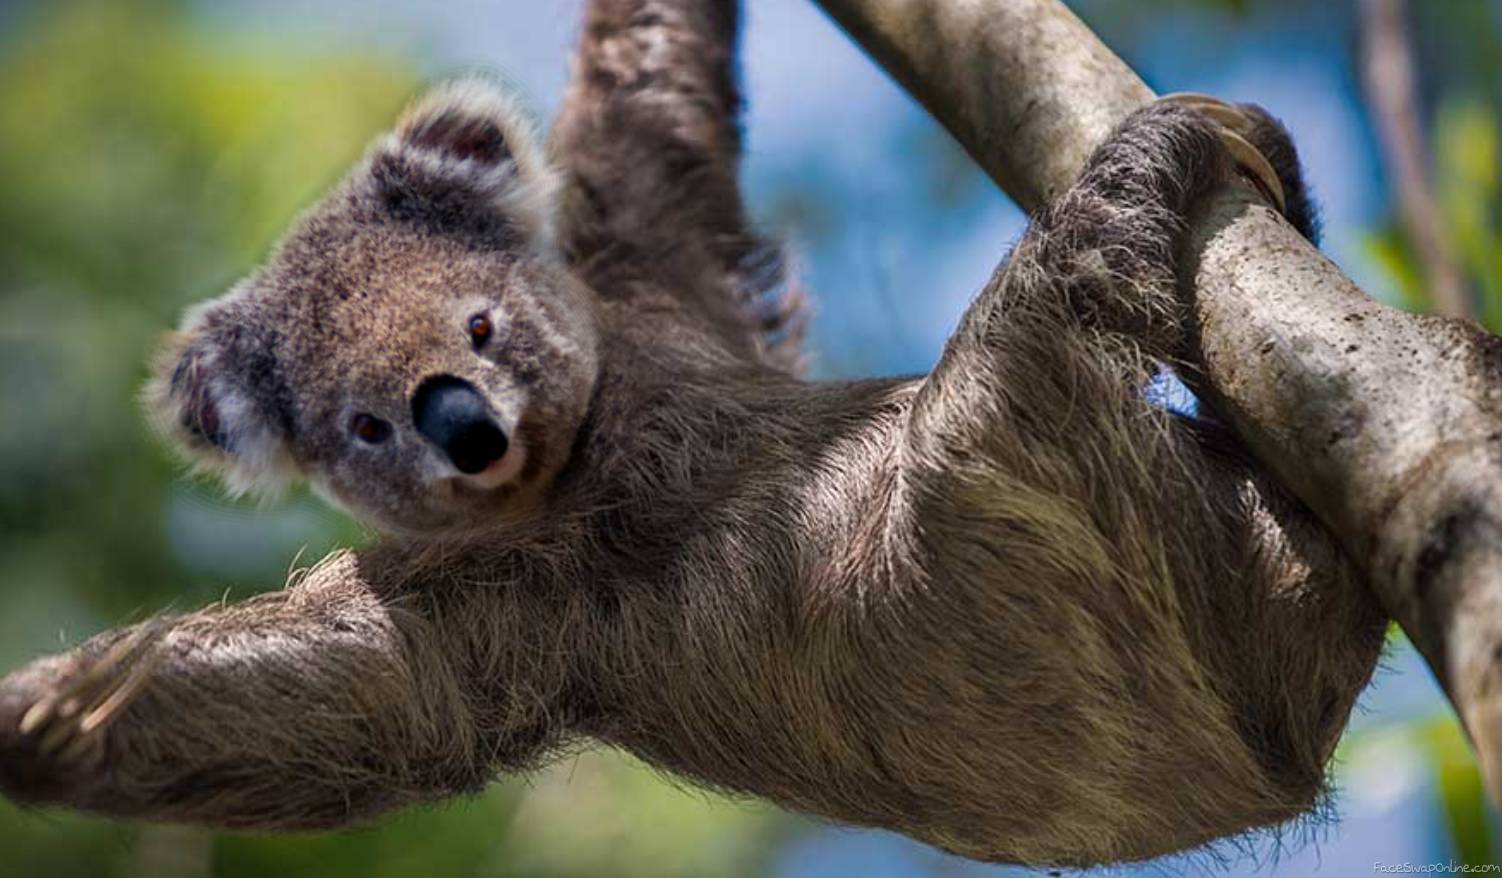 Koala in Sloth's Body